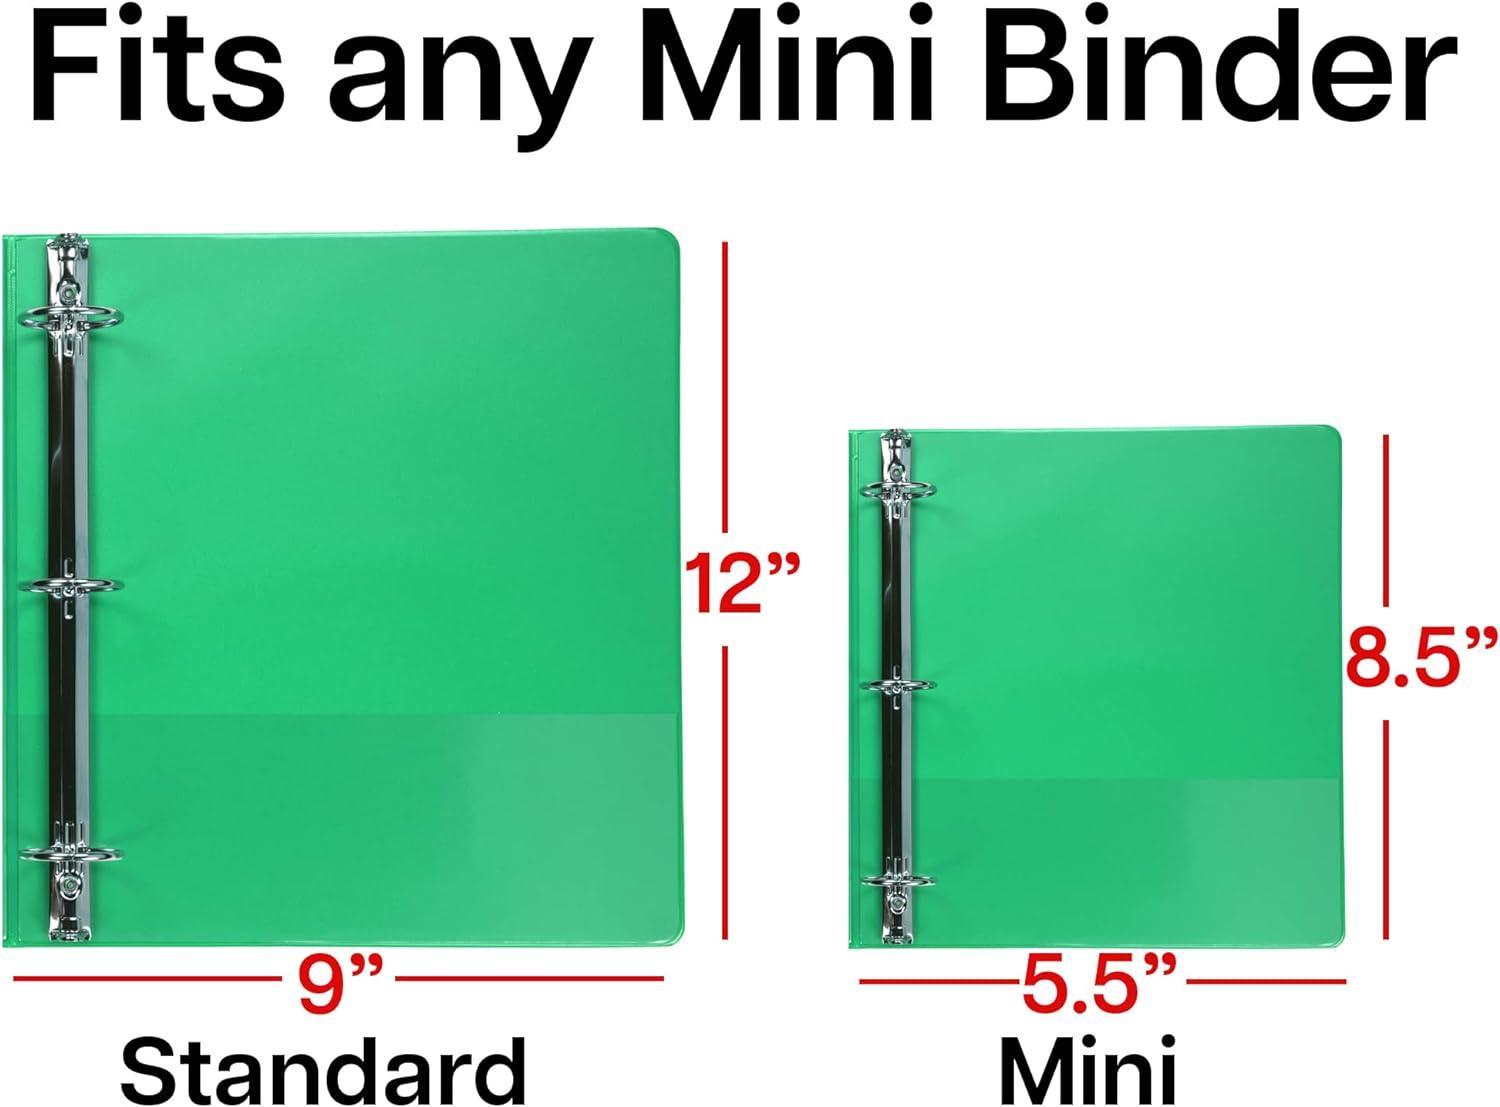  Mini Binder